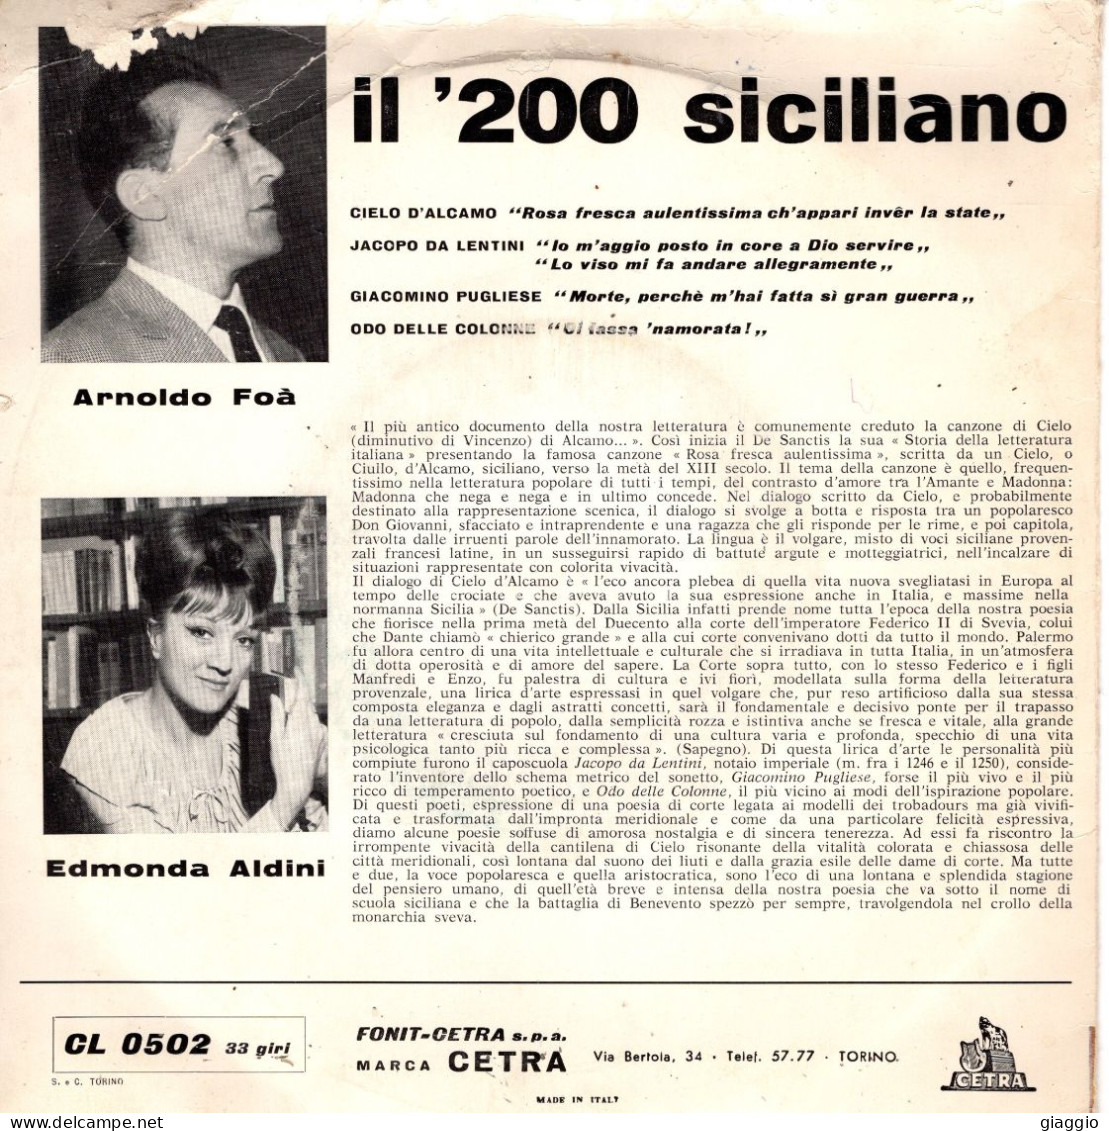 °°° 590) 45 GIRI - NANNI STEFANO - IL 200 SICILIANO - LETTURE ARNOLDO FOA °°° - Other - Italian Music